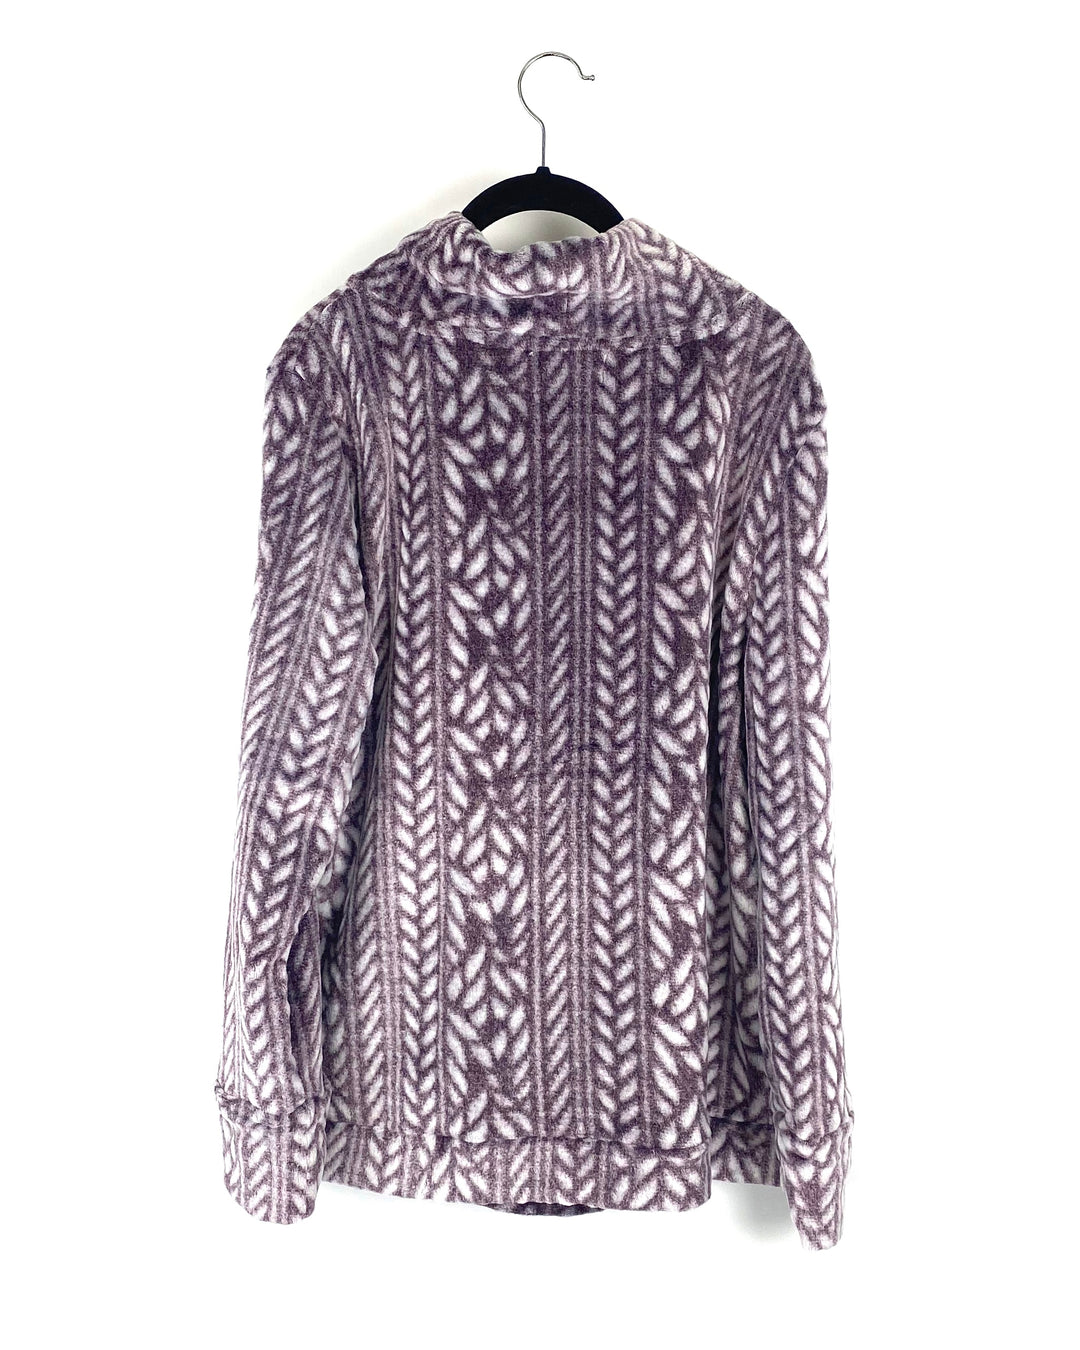 Printed Burgundy Fleece Sweatshirt - Small